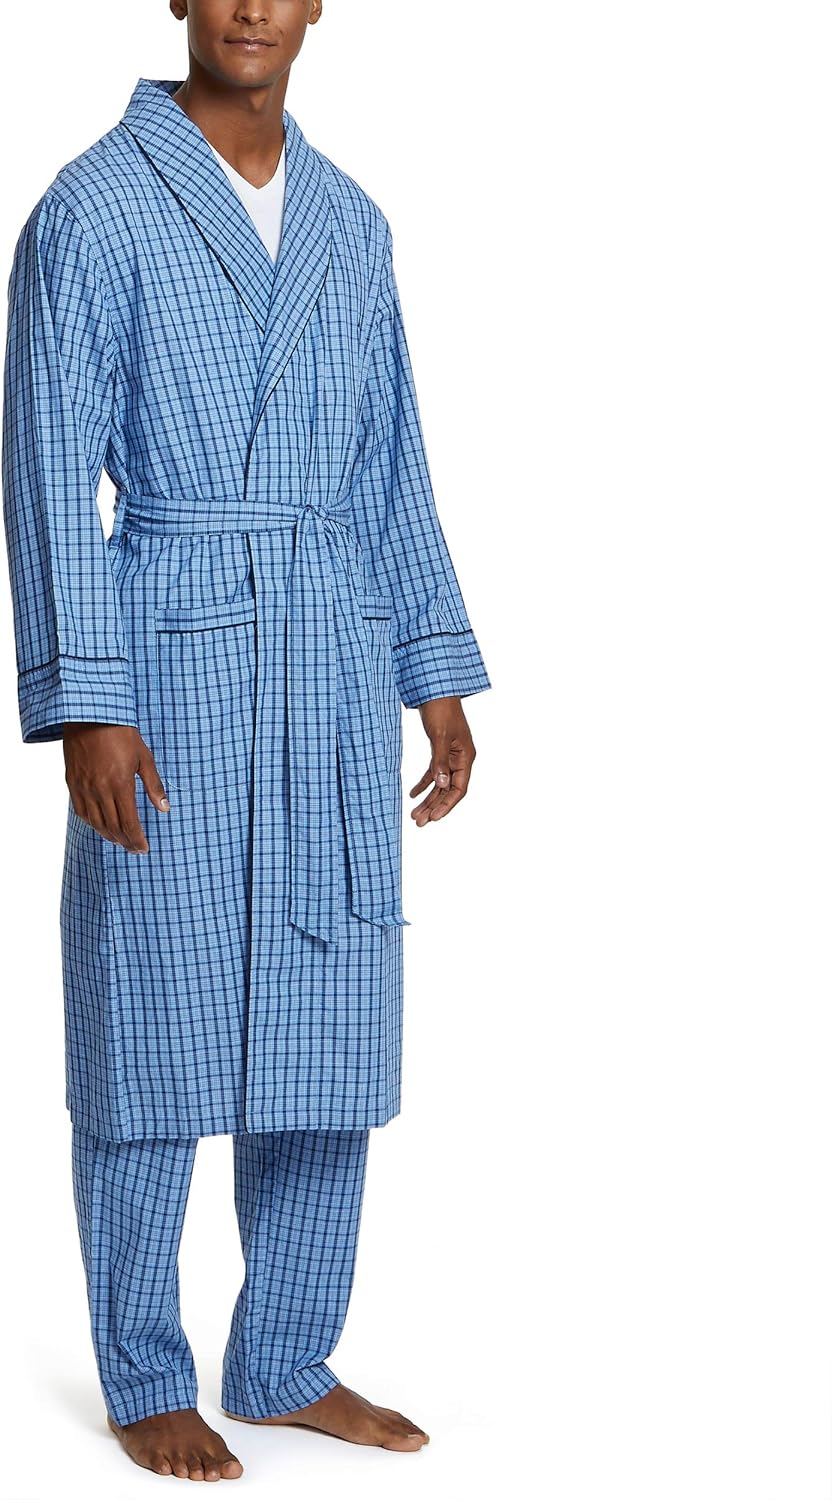 Premium Cotton Blend Woven Lightweight Bathrobe Mens 2 Pack Long Sleep Robe 